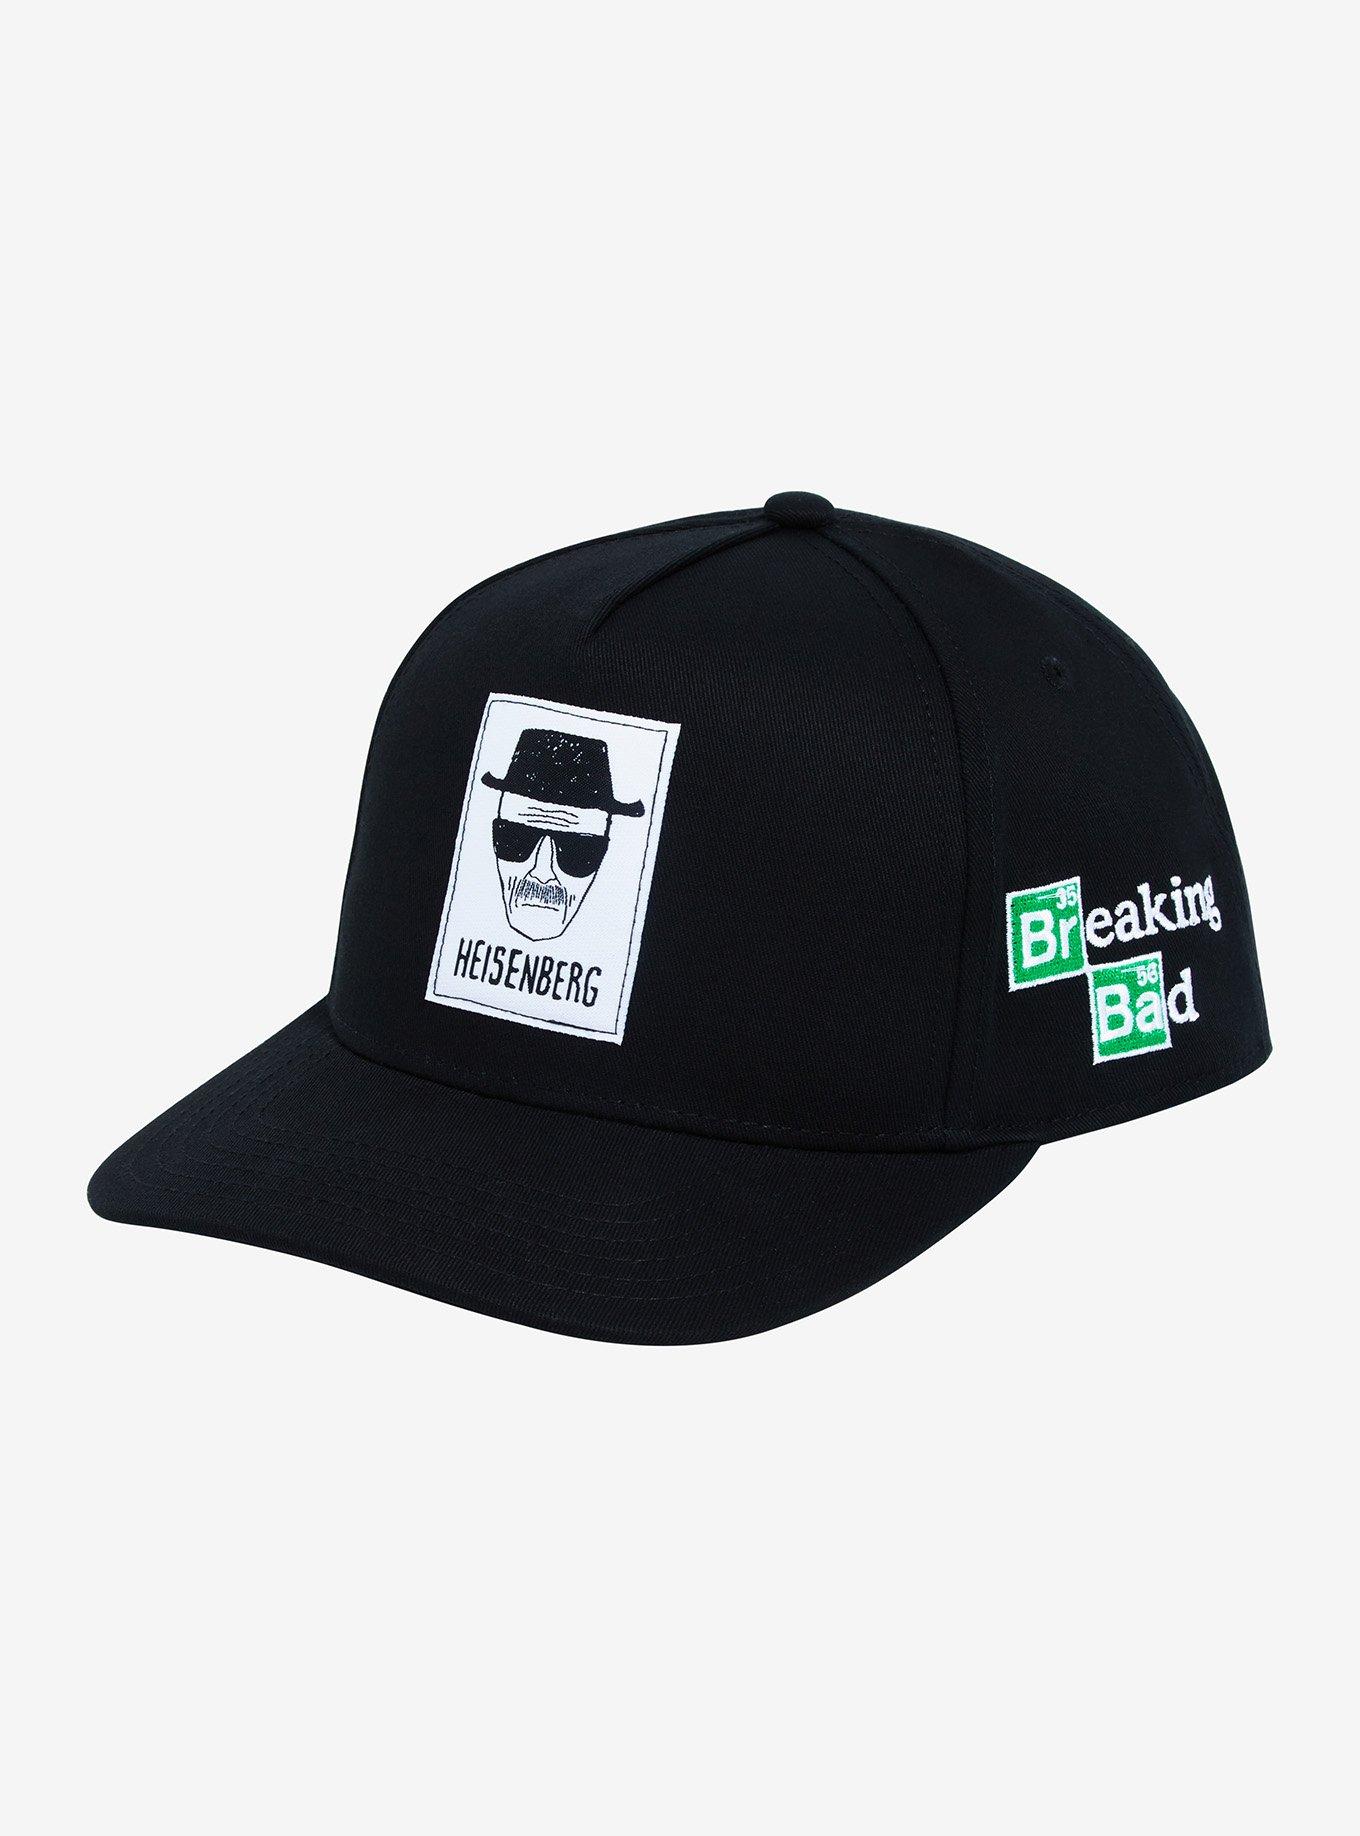 Breaking Bad Heisenberg Sketch Snapback Hat